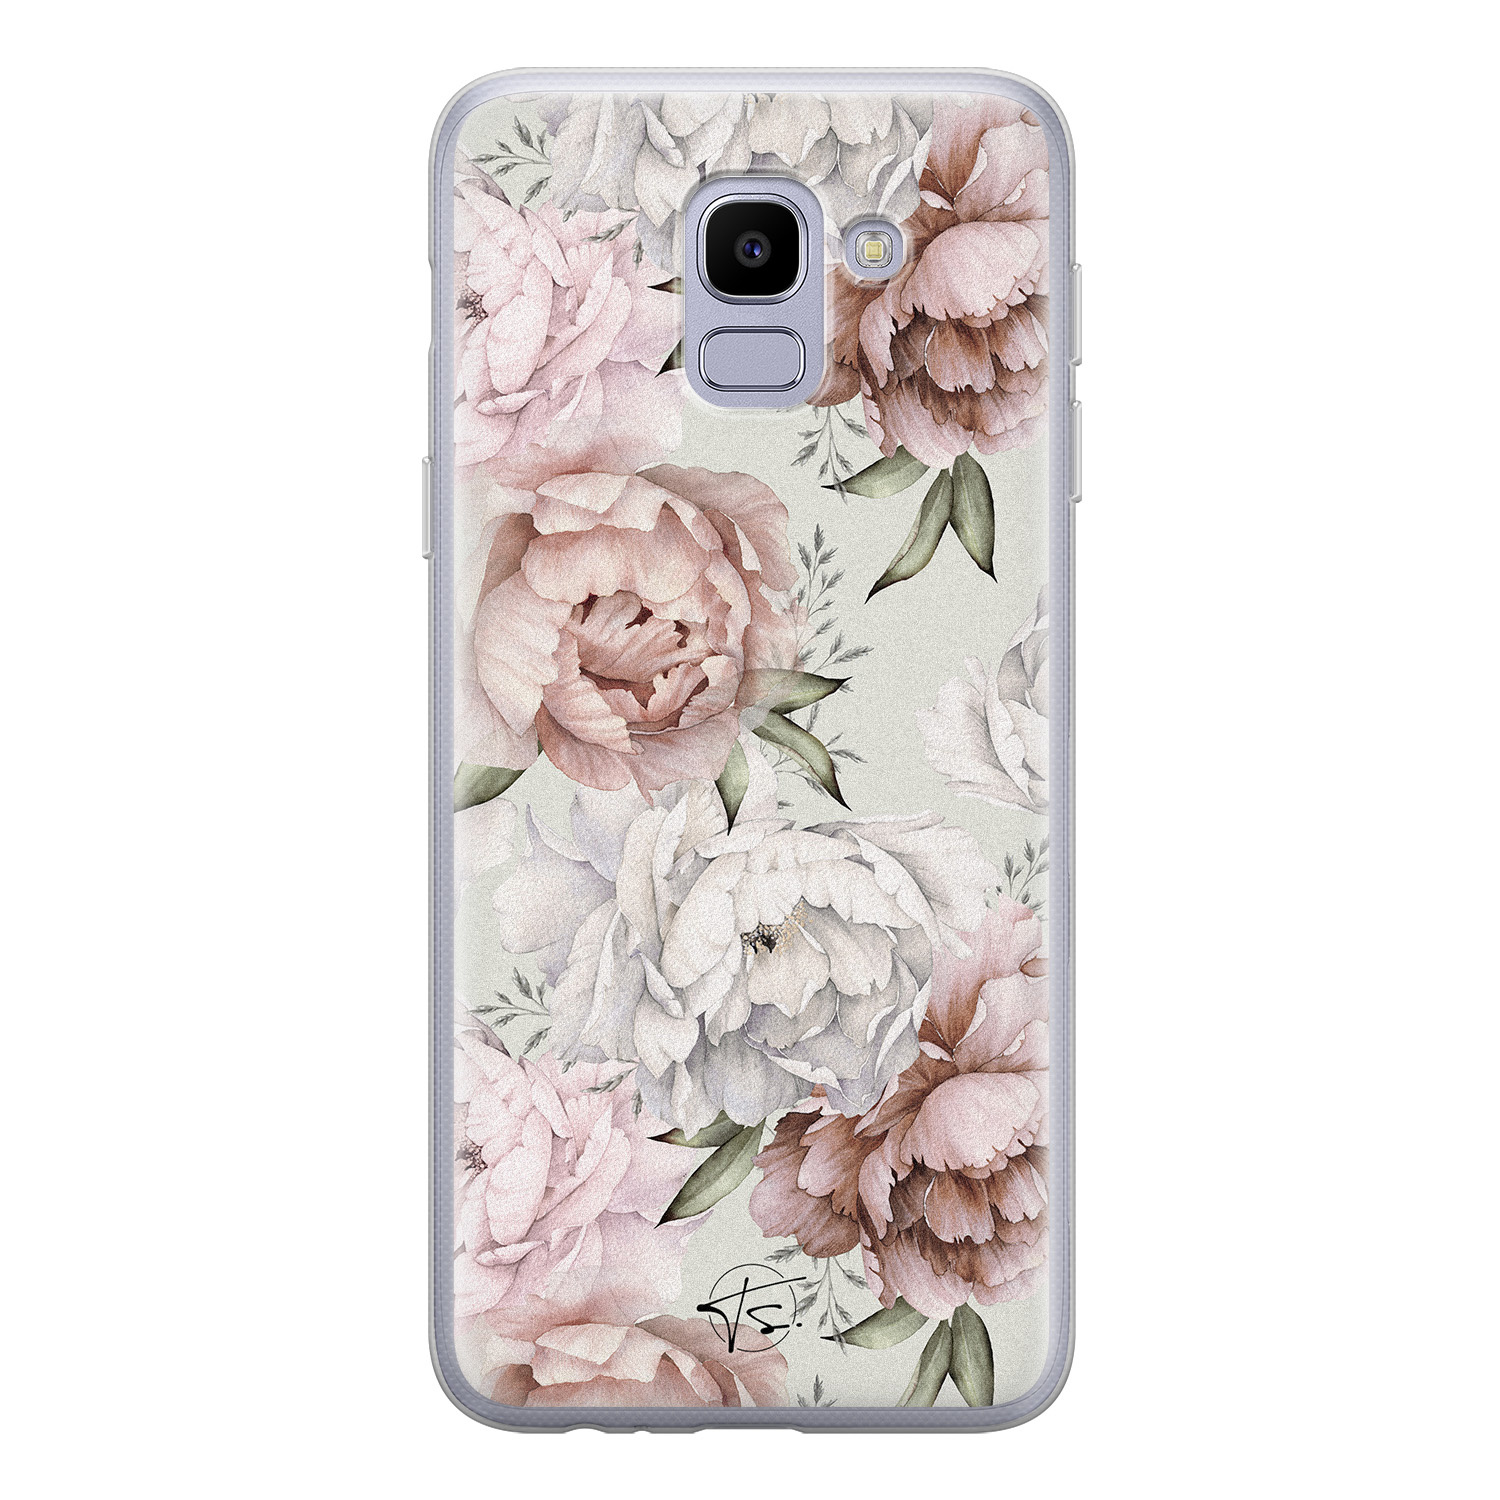 Telefoonhoesje Store Samsung Galaxy J6 2018 siliconen hoesje - Classy flowers